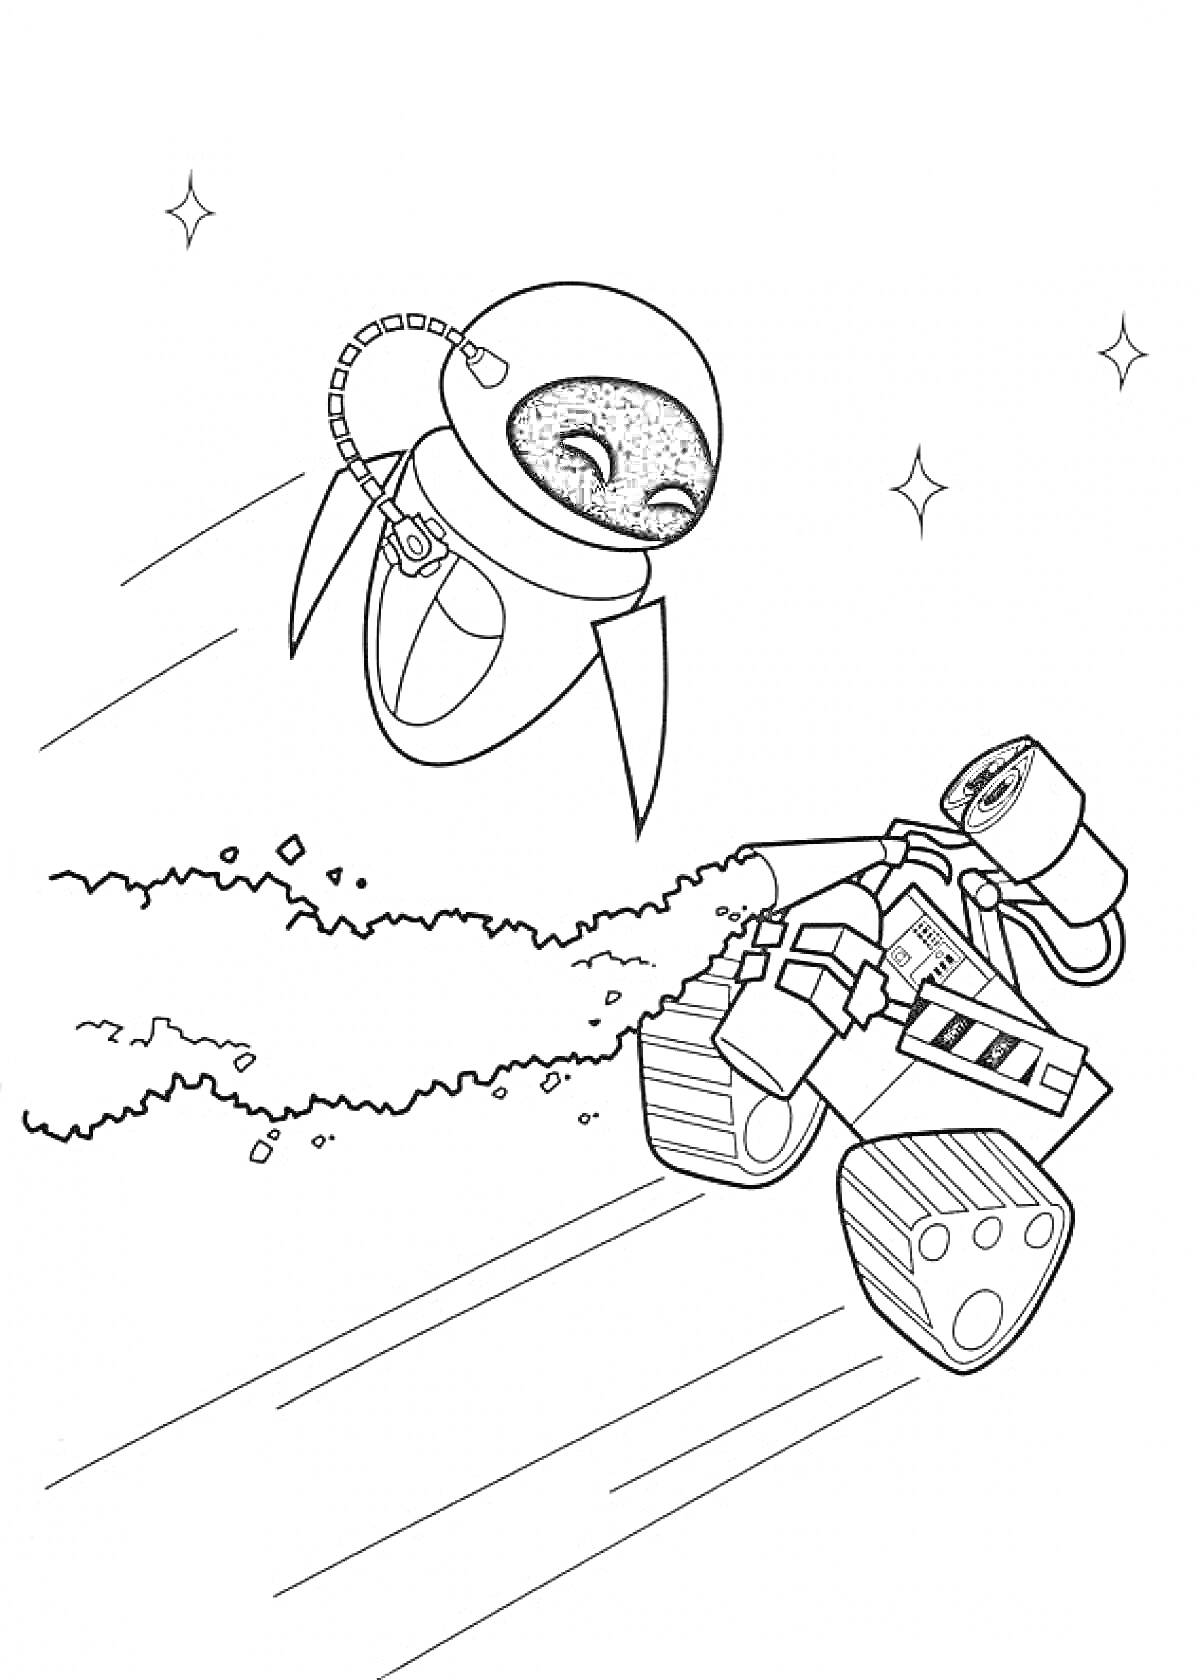 Летающий робот ЕВА и Валли, едущий по зарослям с искрами, звездное небо